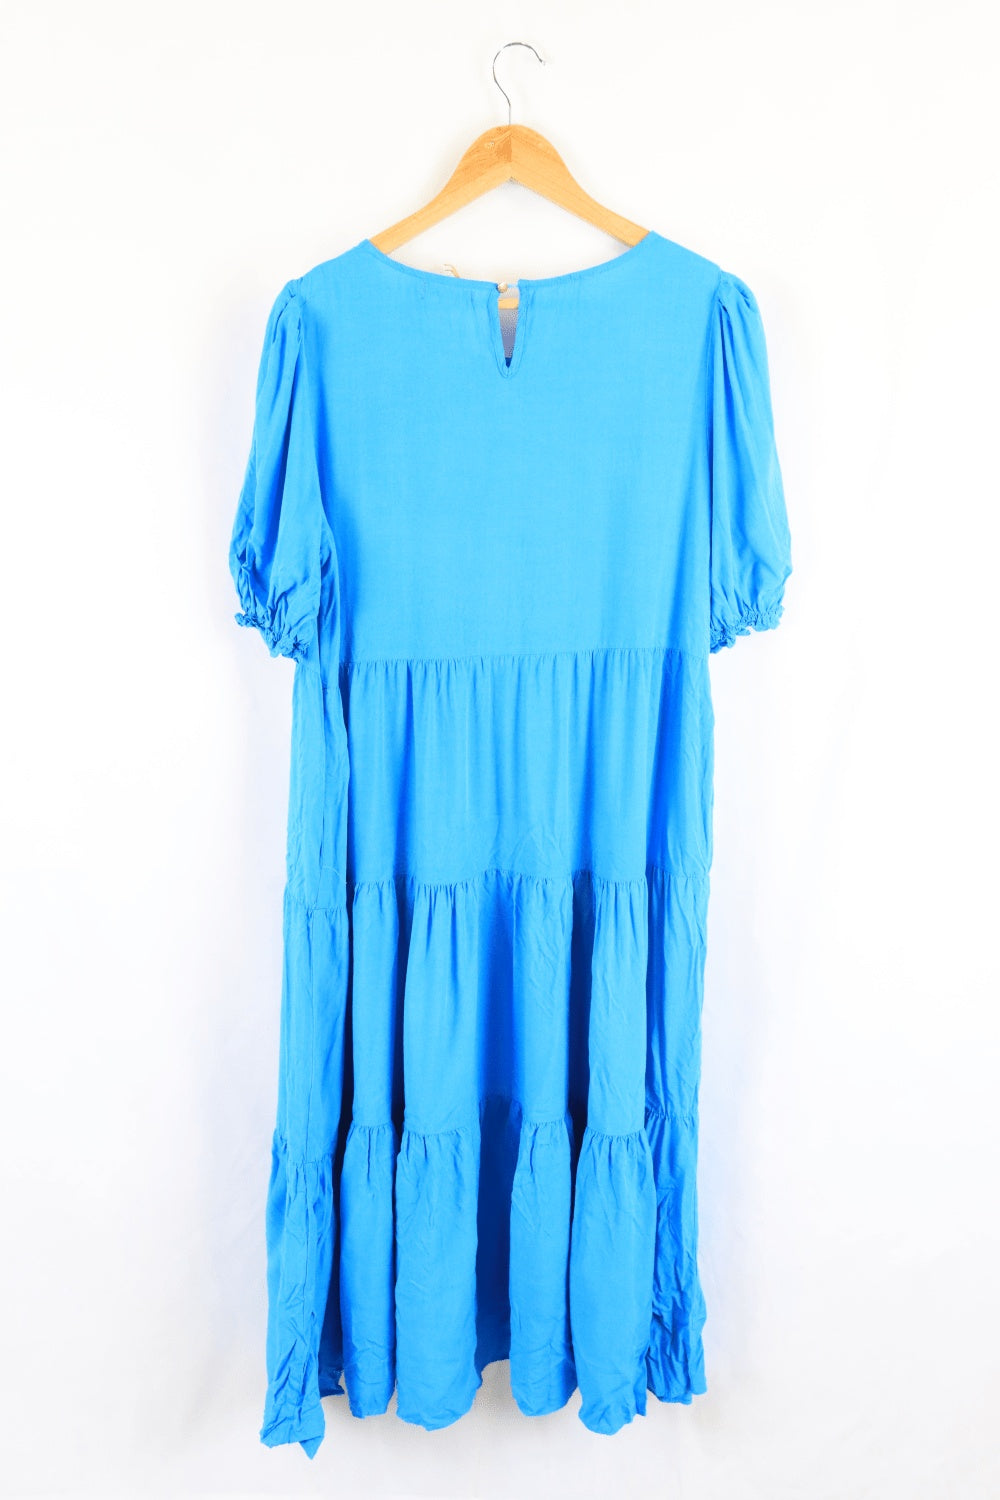 St Frock Blue Dress 12